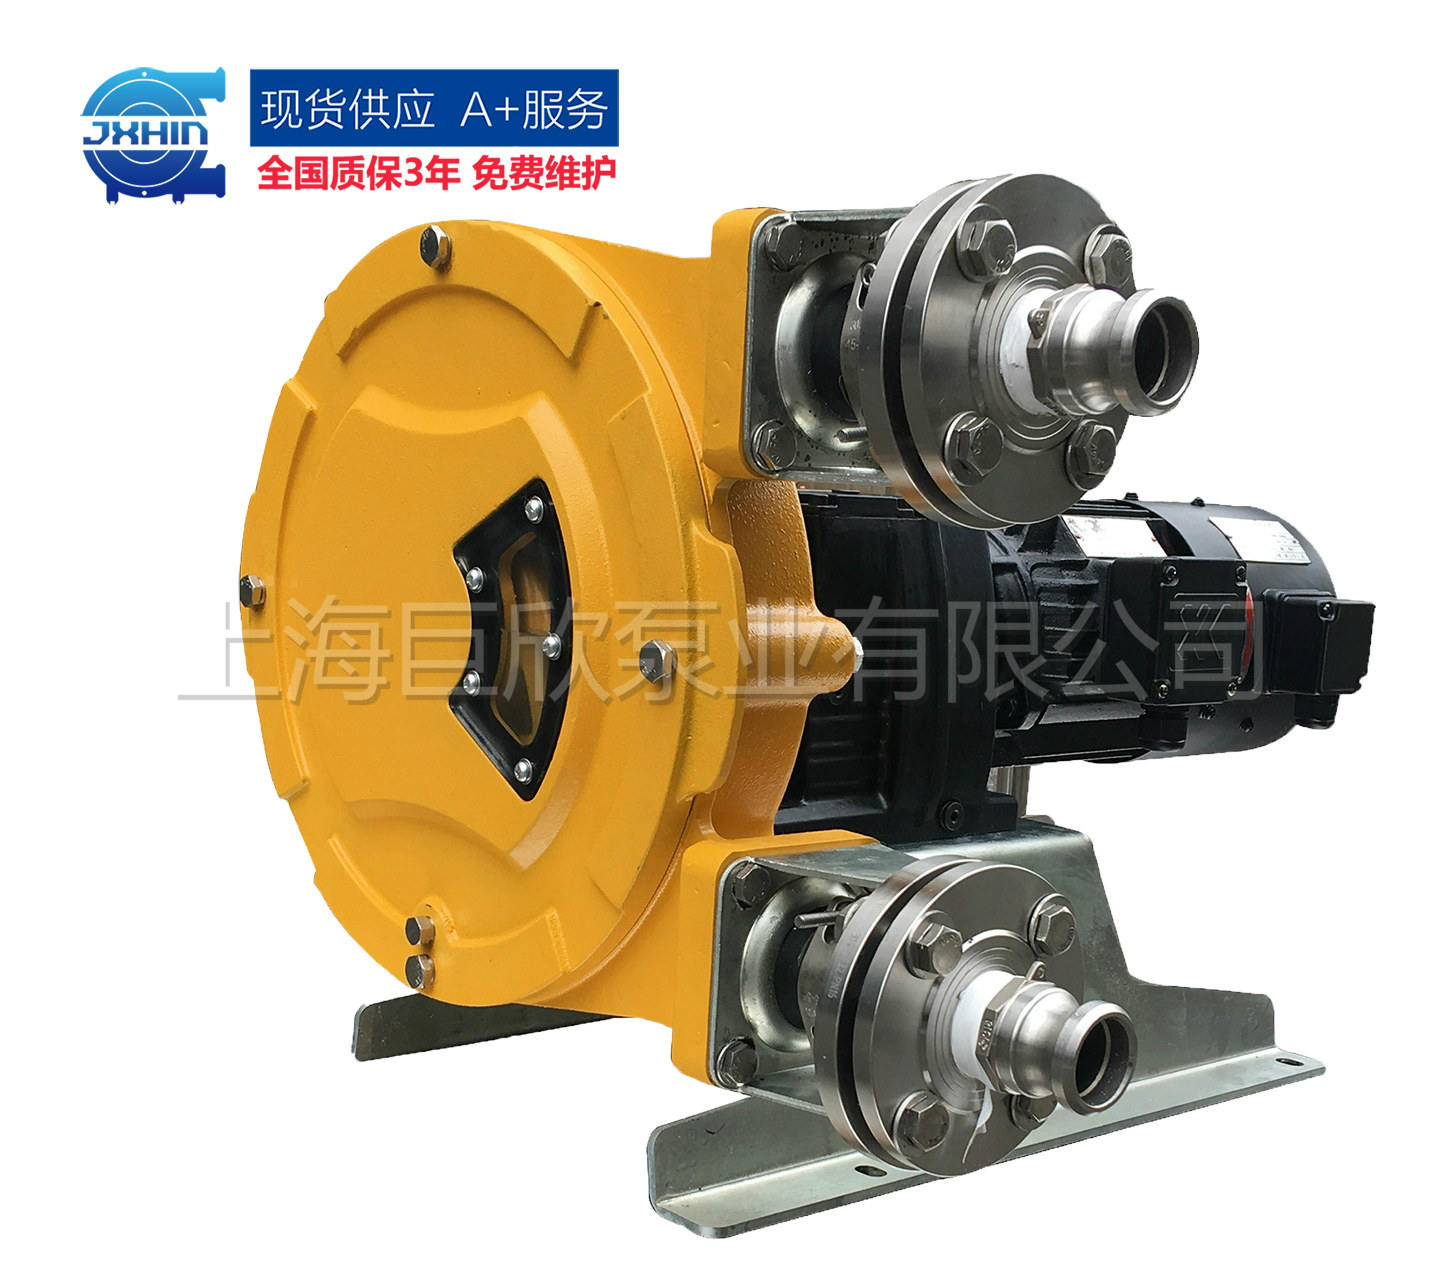 工业软管泵-国产工业软管泵-上海工业软管泵生产厂家